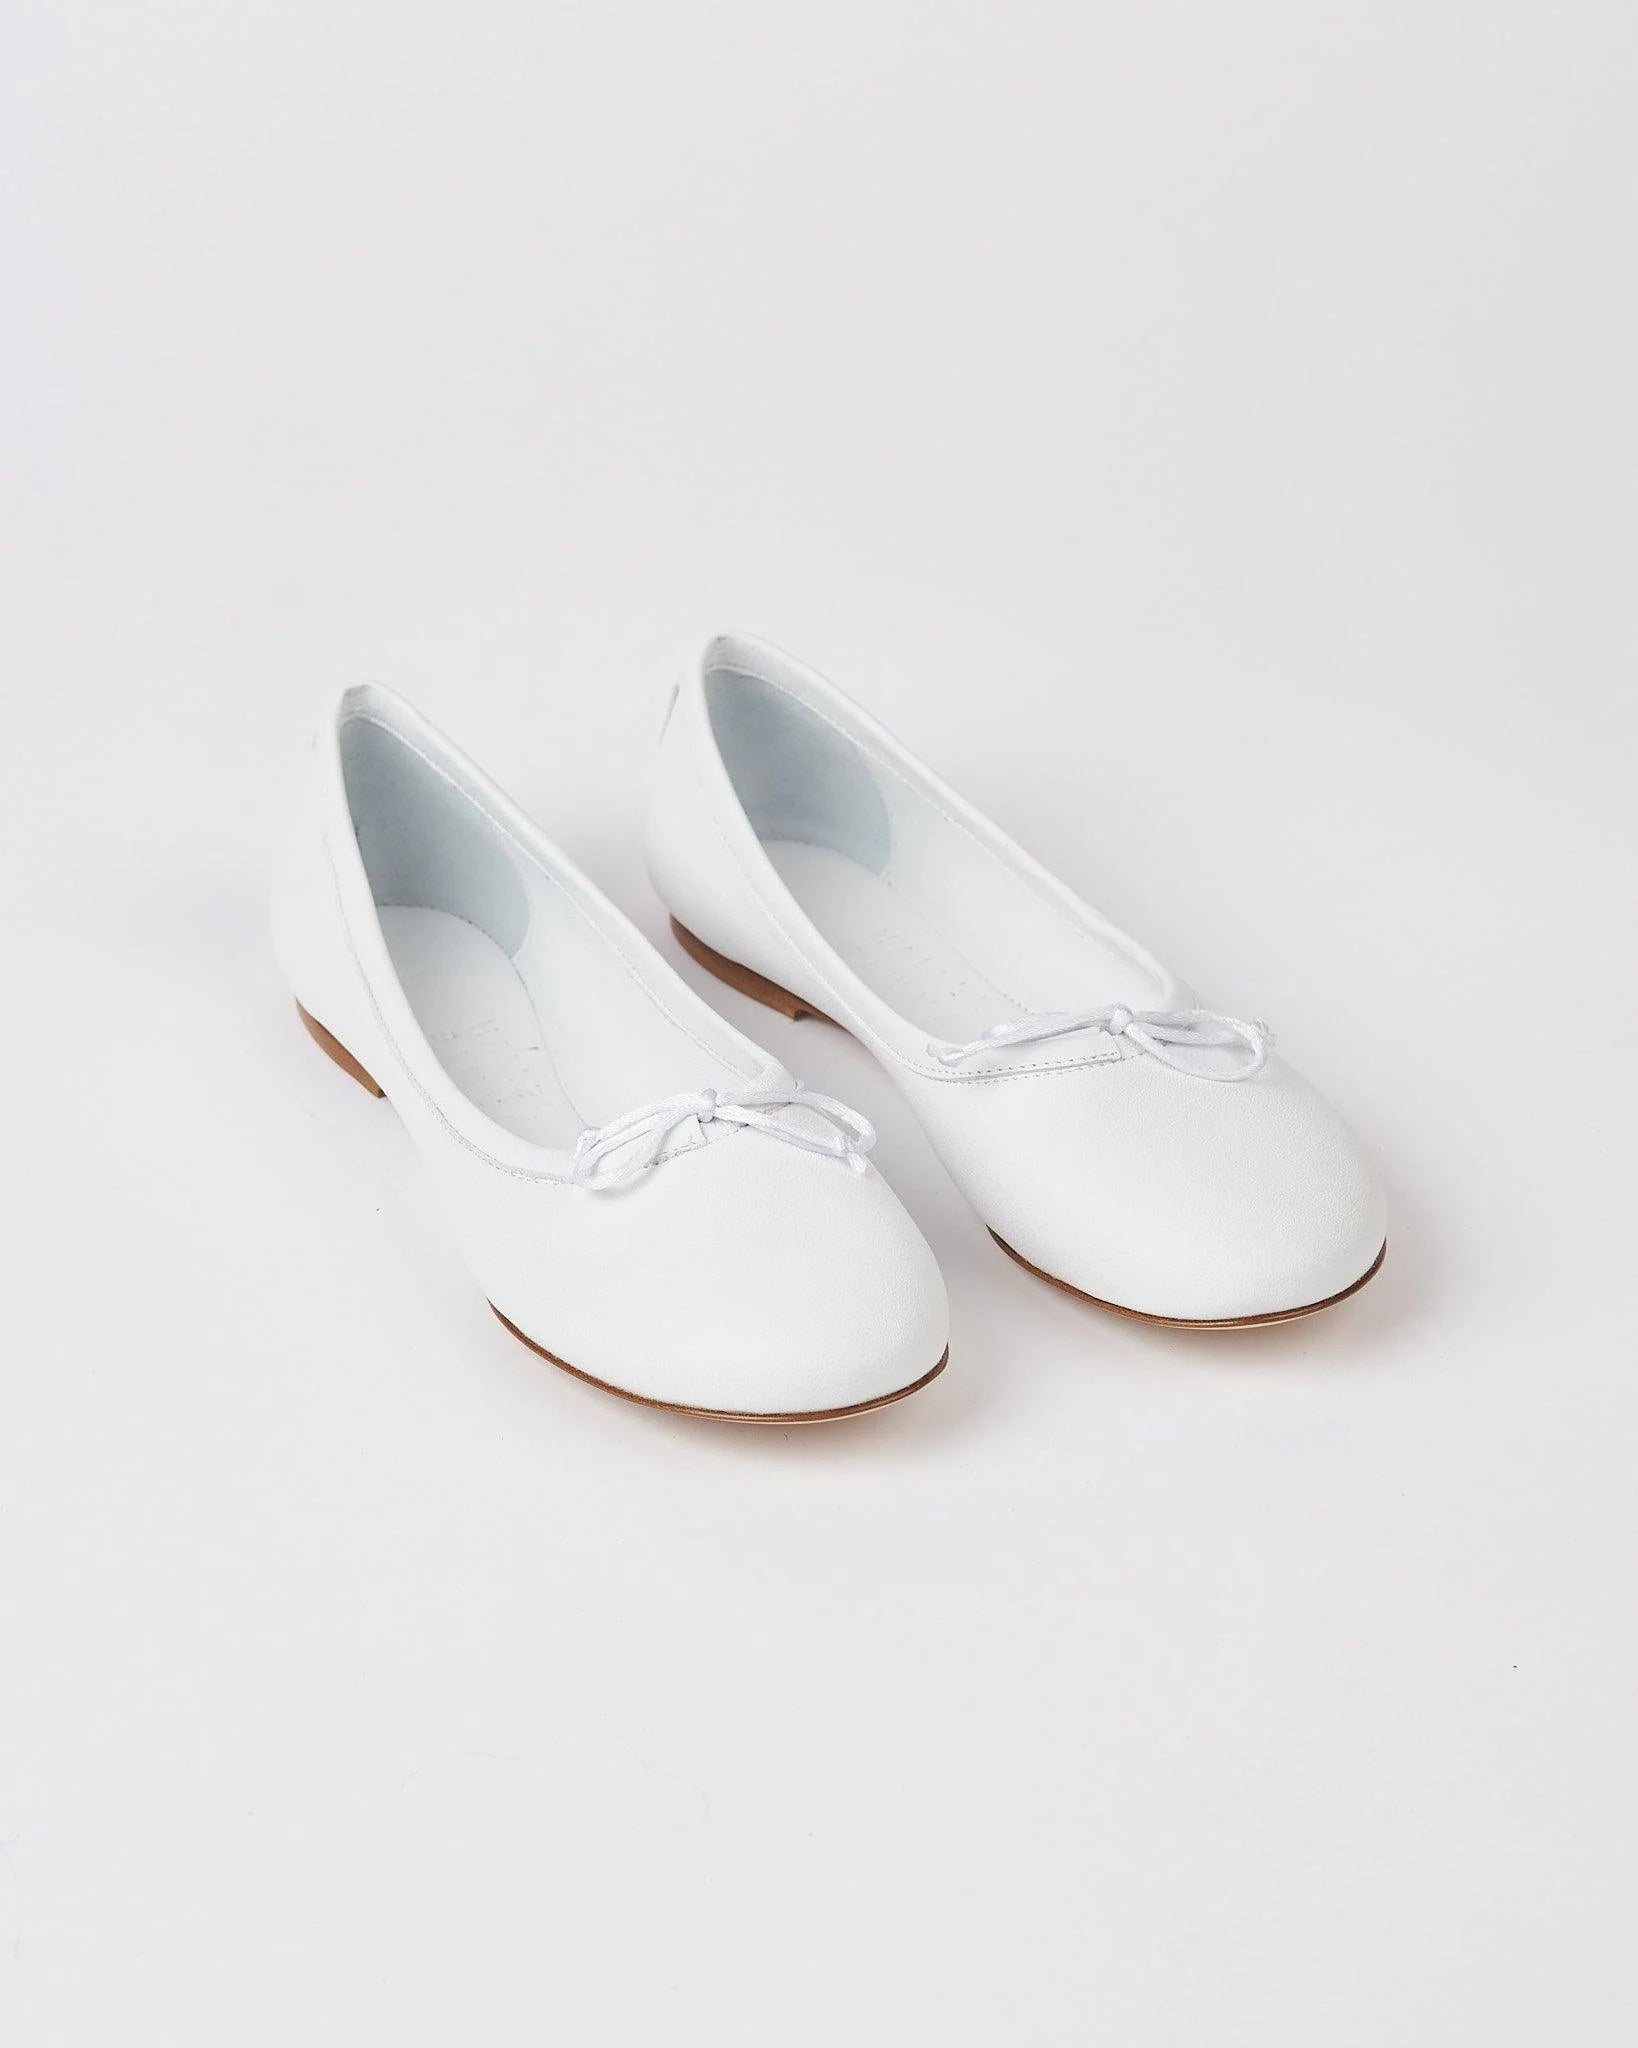 the ballet slipper in white.